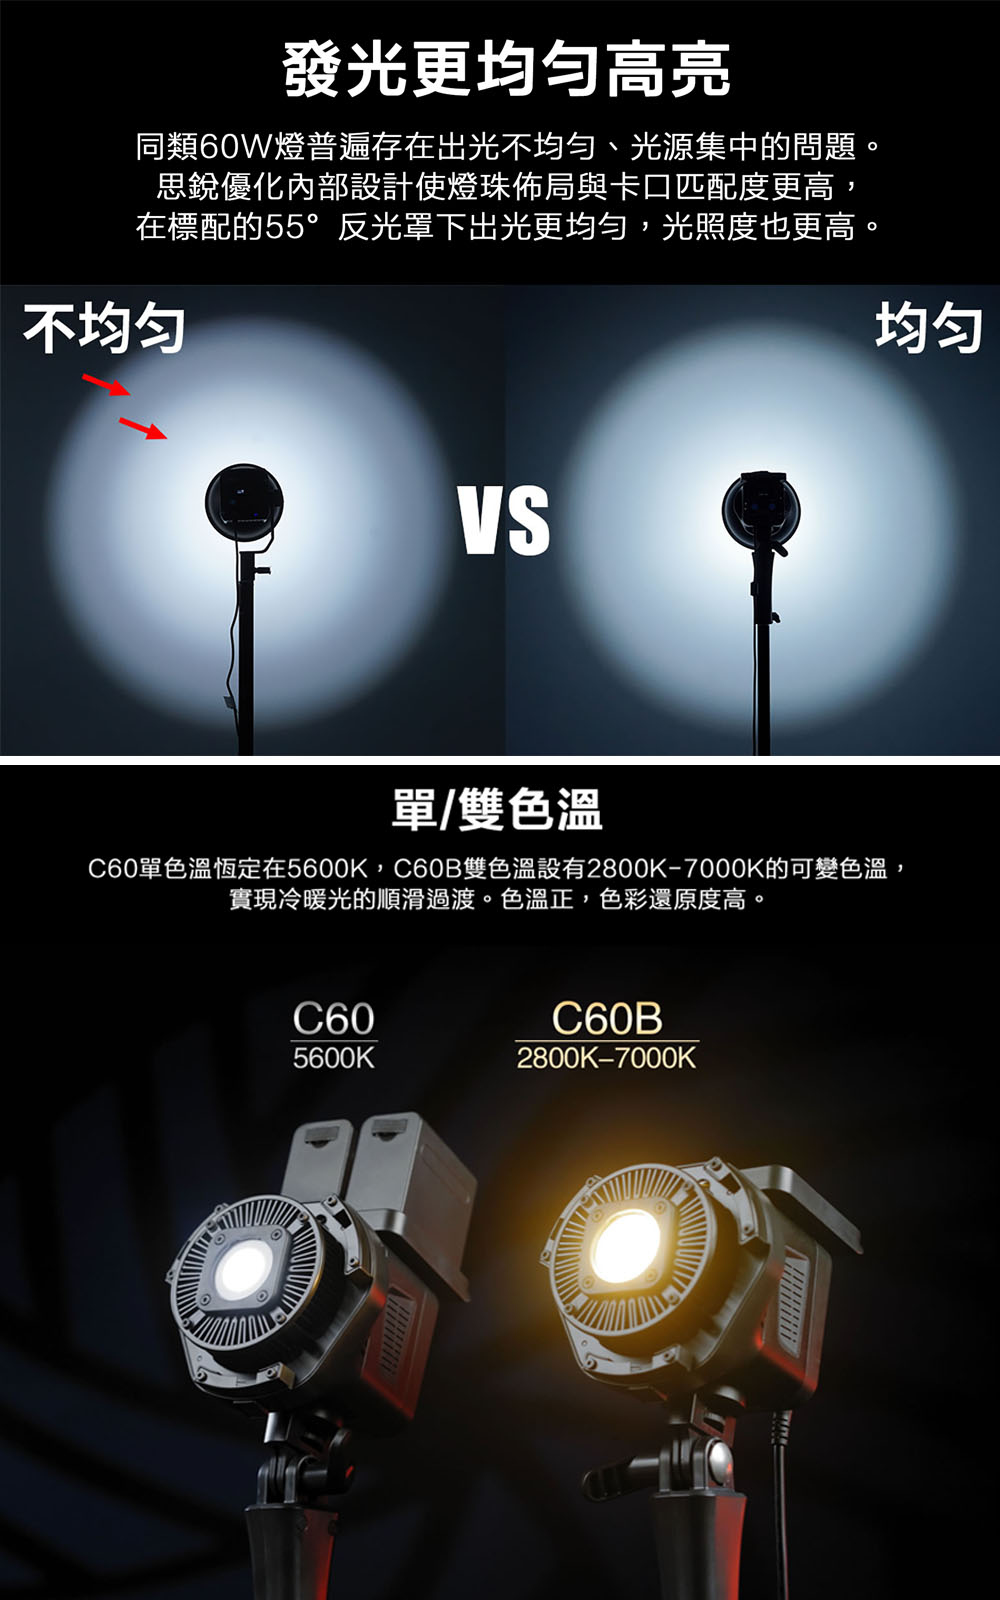 3期怪機絲Sirui C60B 雙色溫LED攝影燈20dB 保榮卡口60W 錄影拍照直播